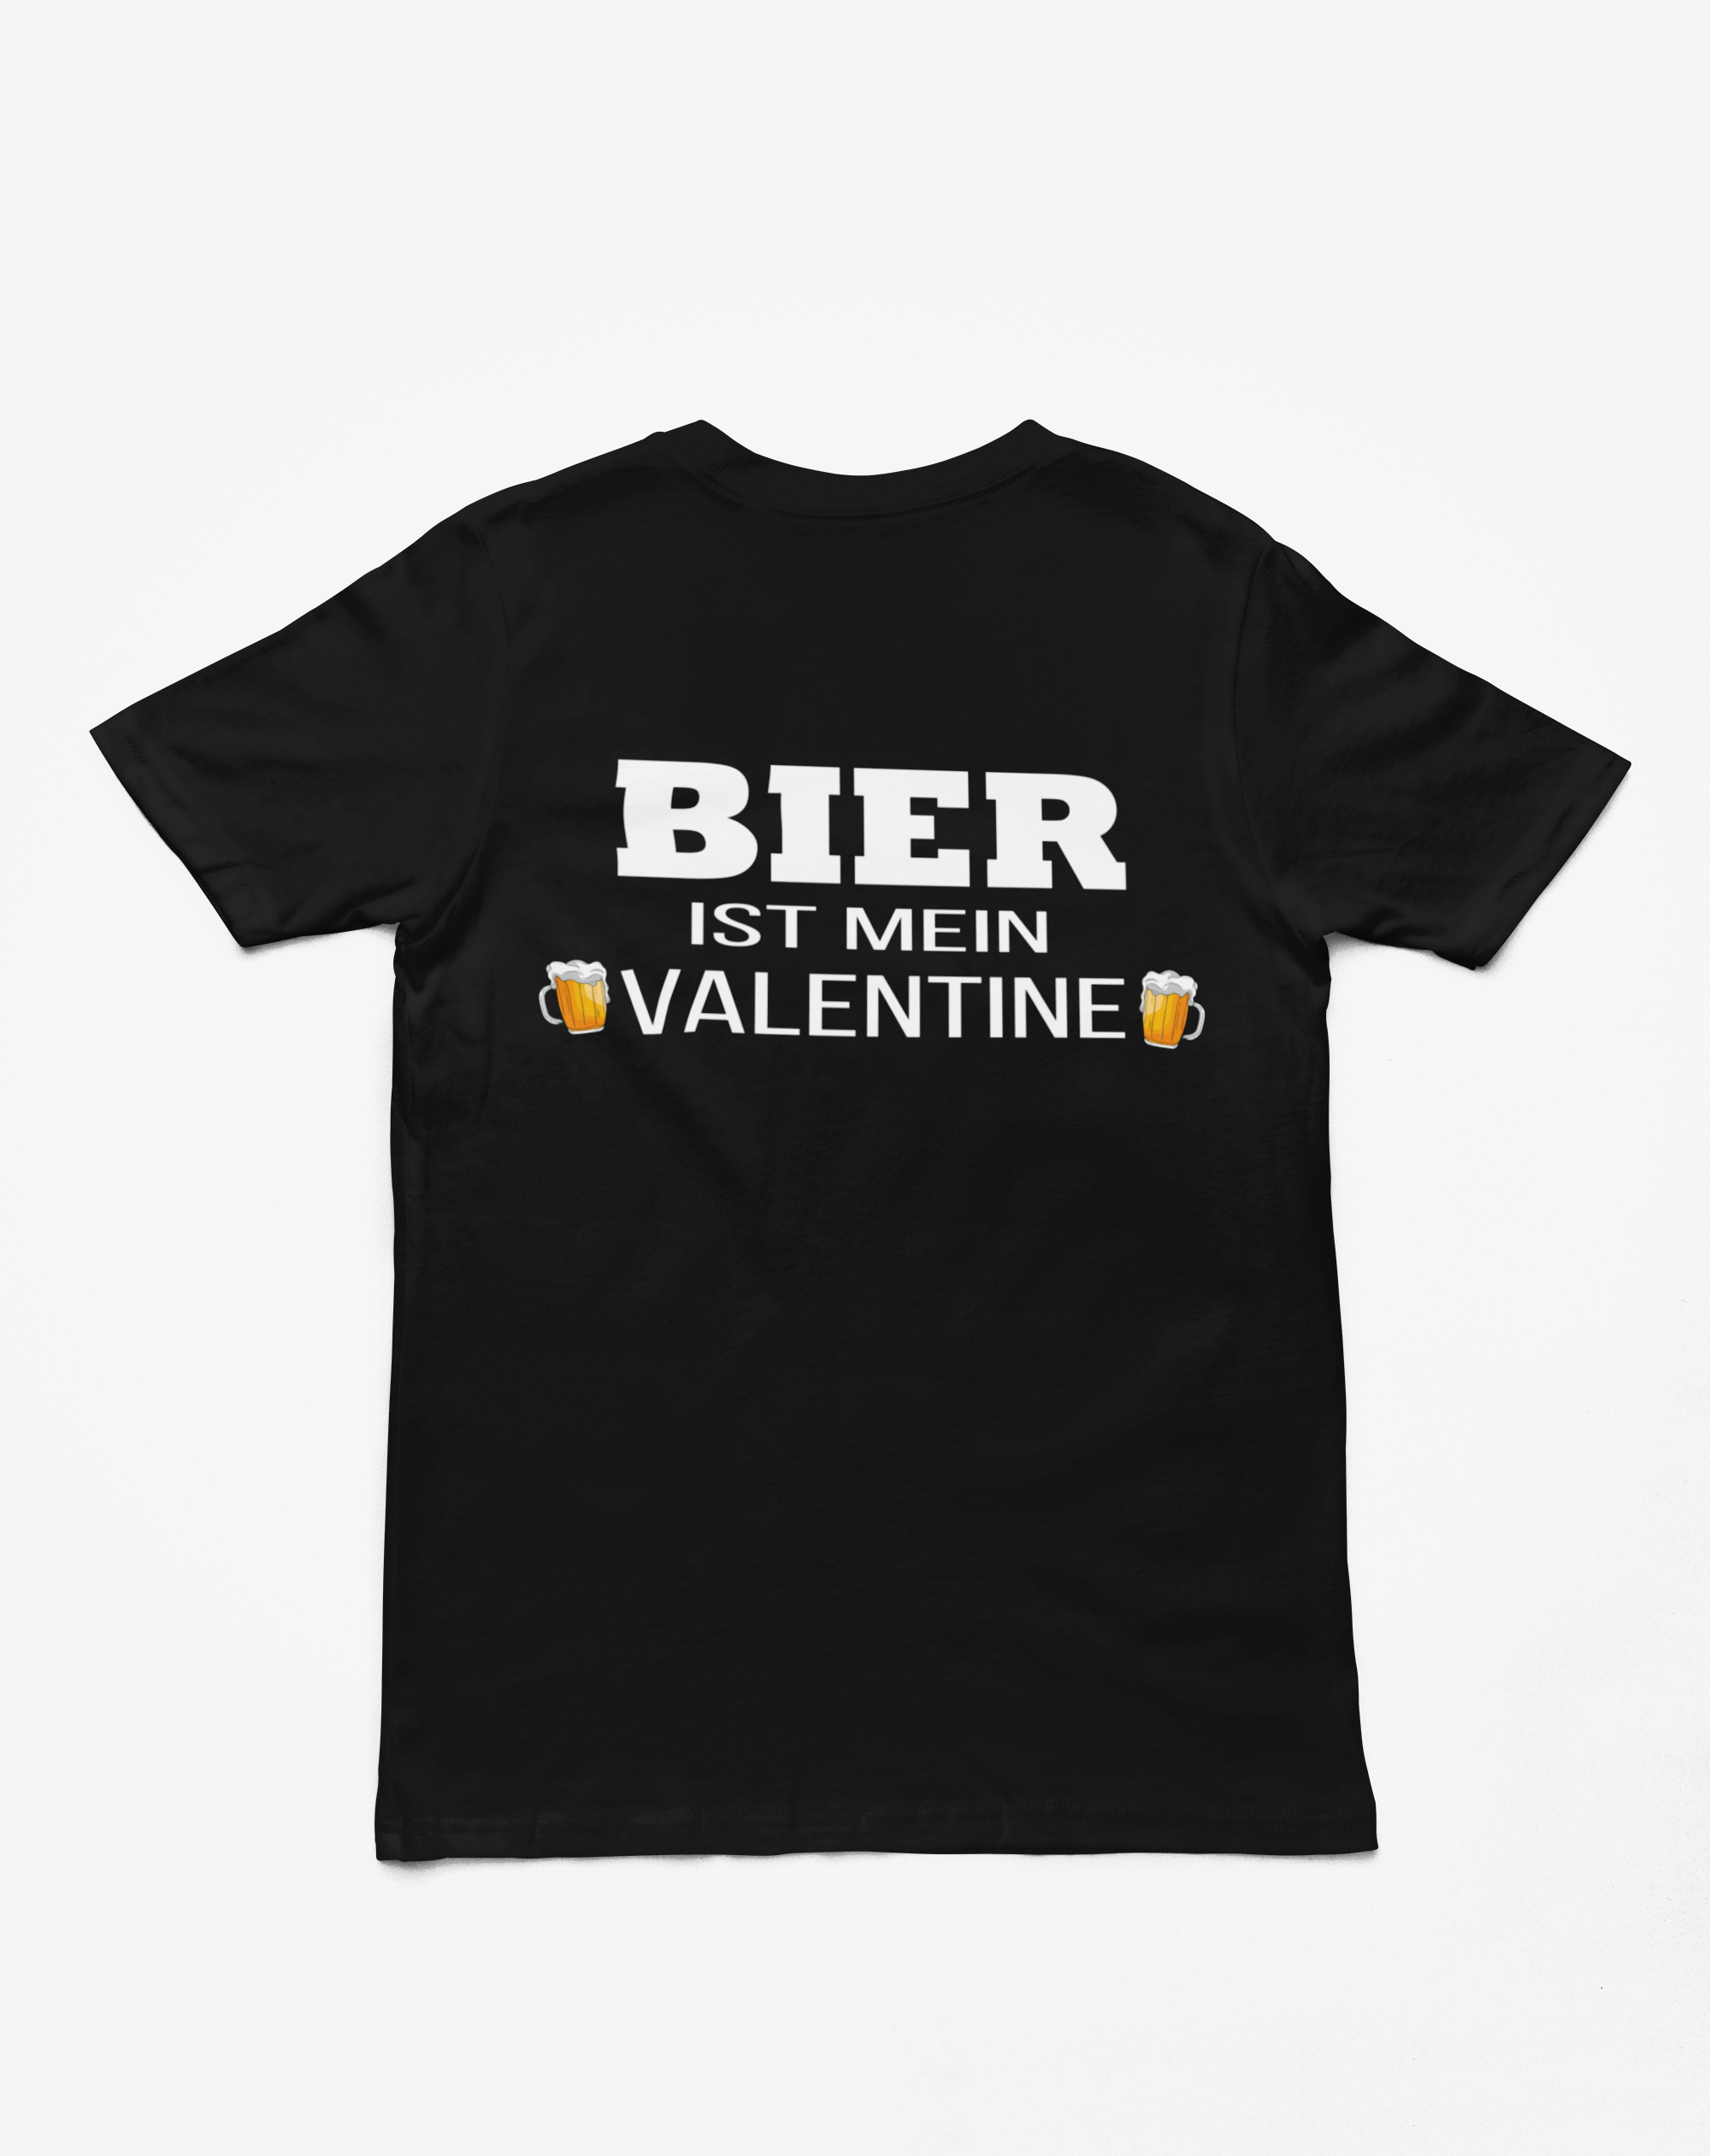 "Bier ist mein Valentine" T-Shirt